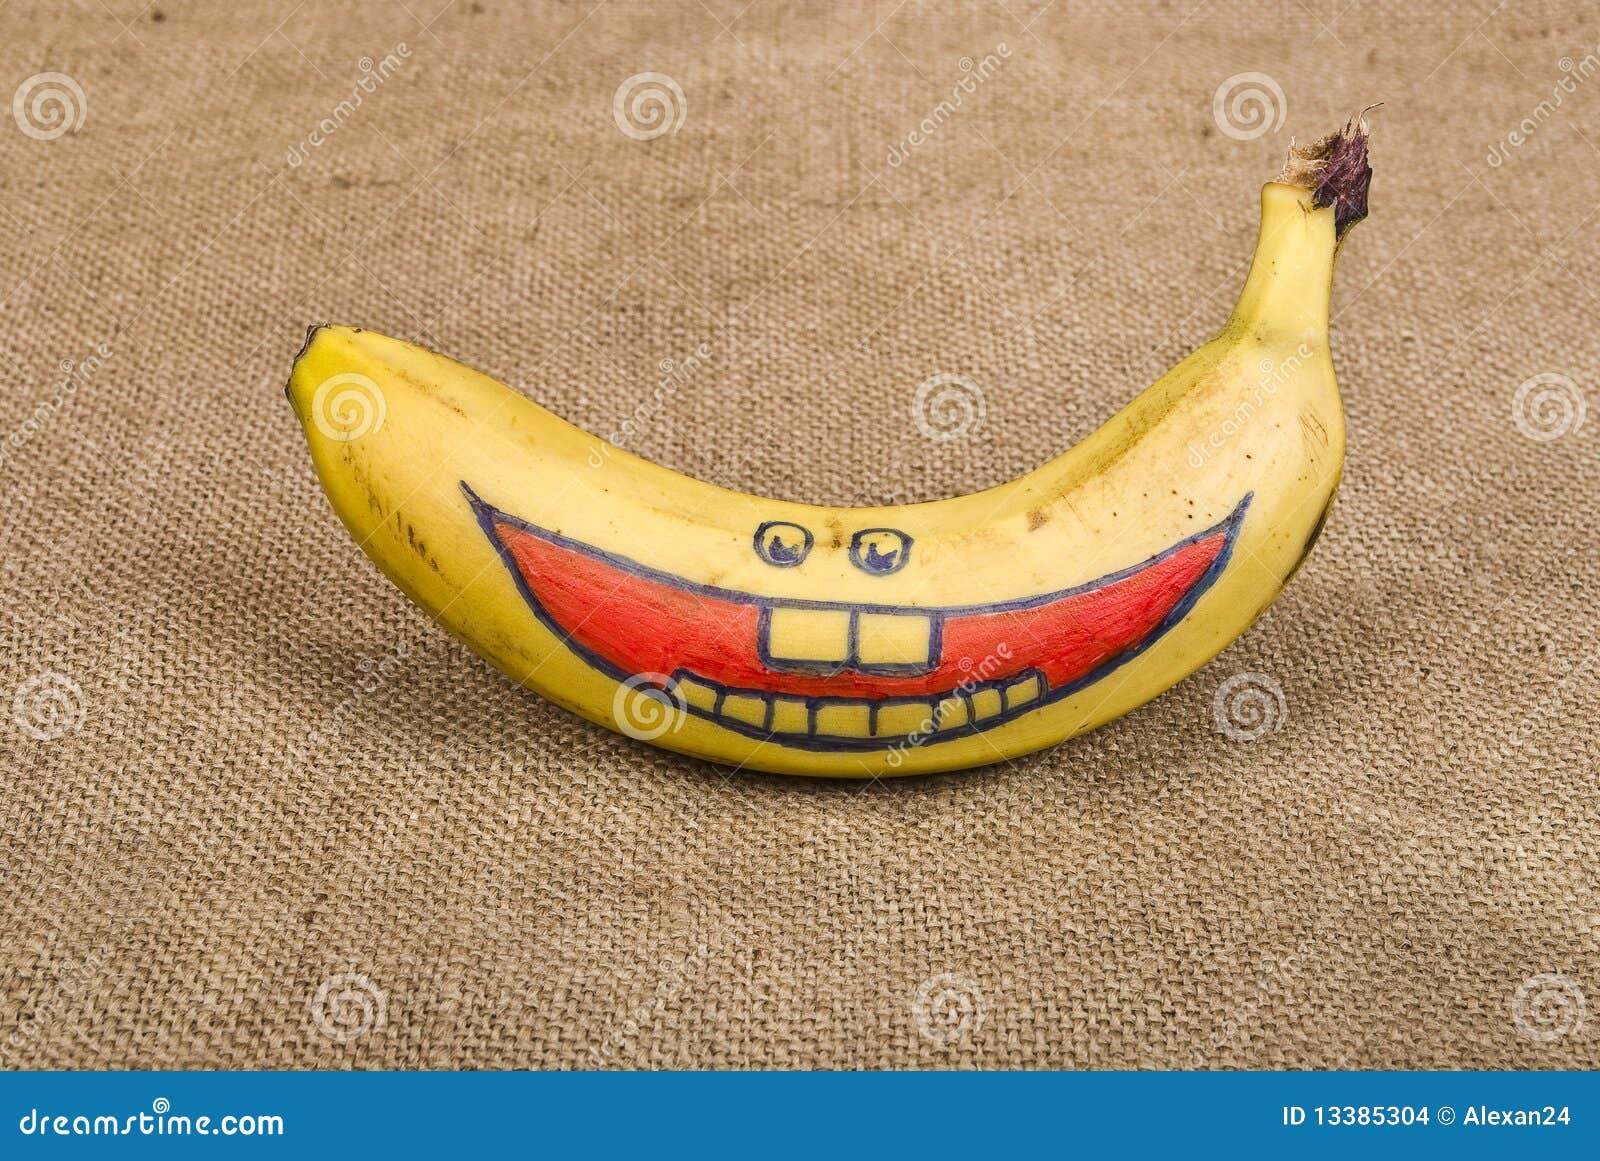 [Bild: banana-smile-13385304.jpg]